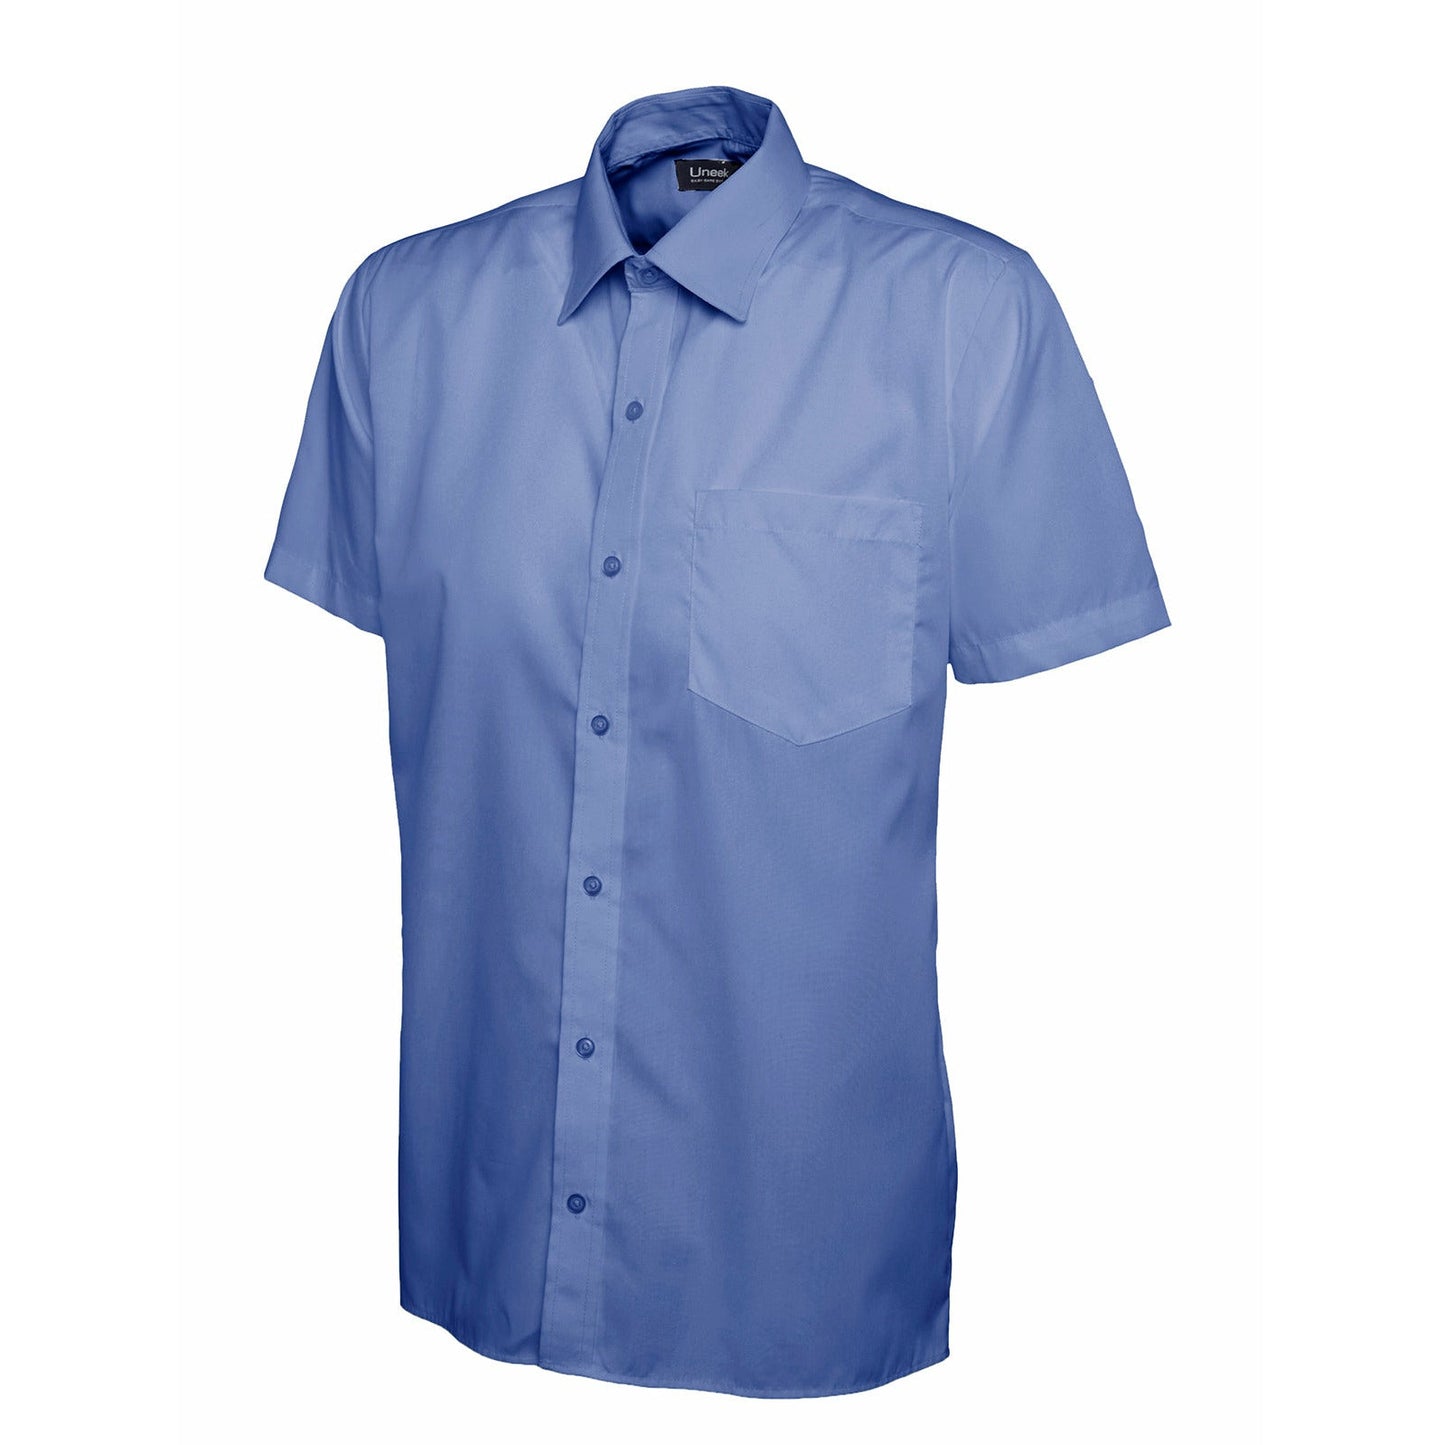 Mens Poplin Half Sleeve Shirt (17 - 19.5) - Mid Blue